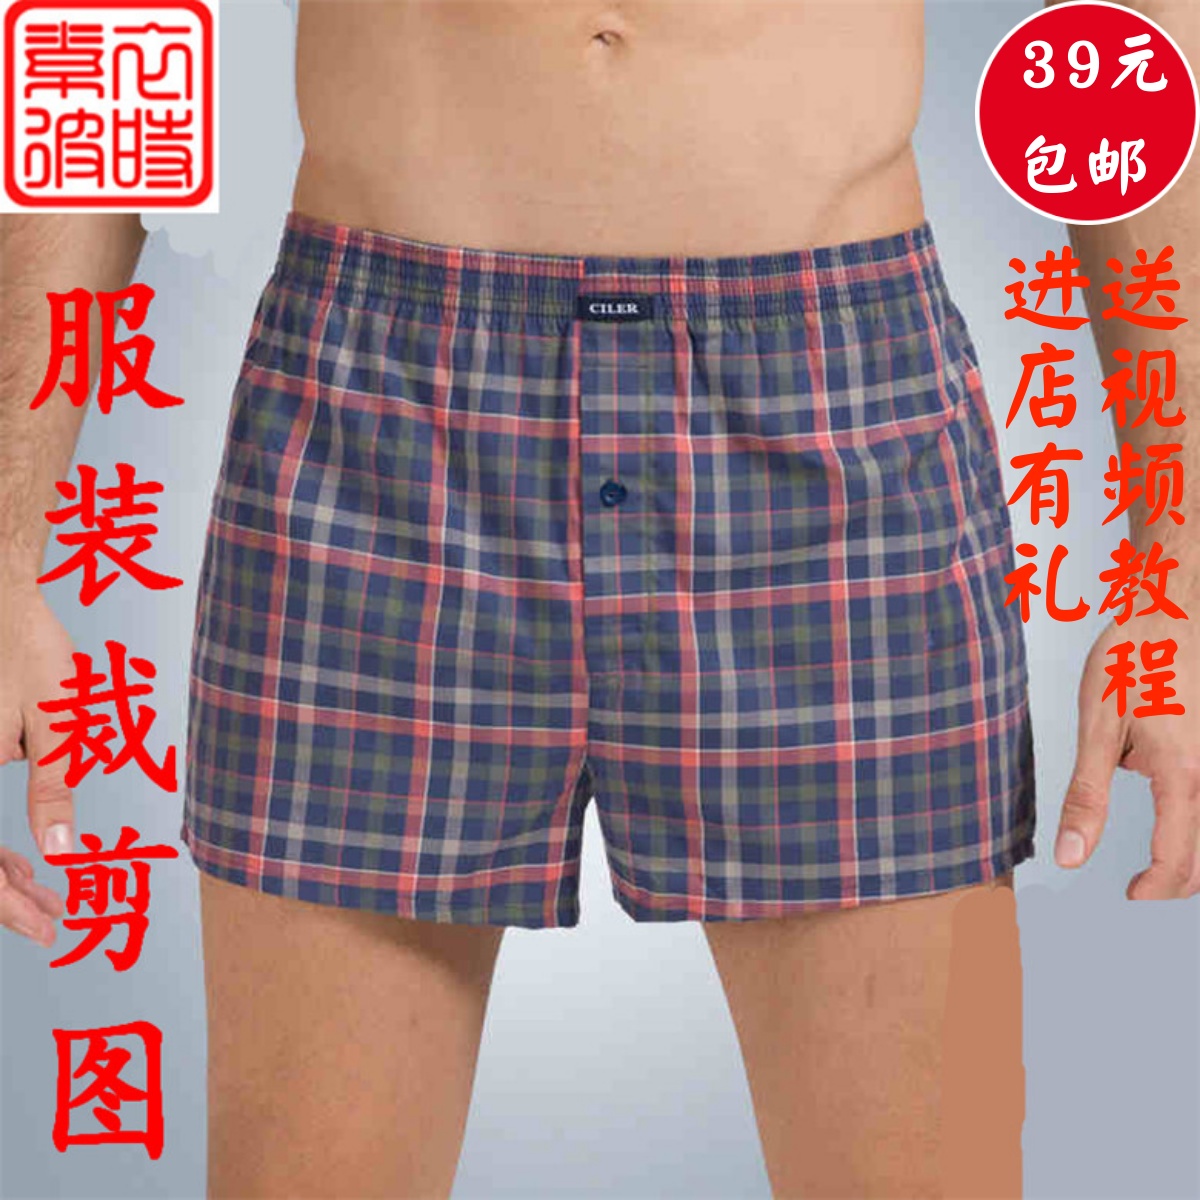 素-男士阿罗裤服装纸样宽松居家平角裤裁剪图1:1运动家居睡裤样板